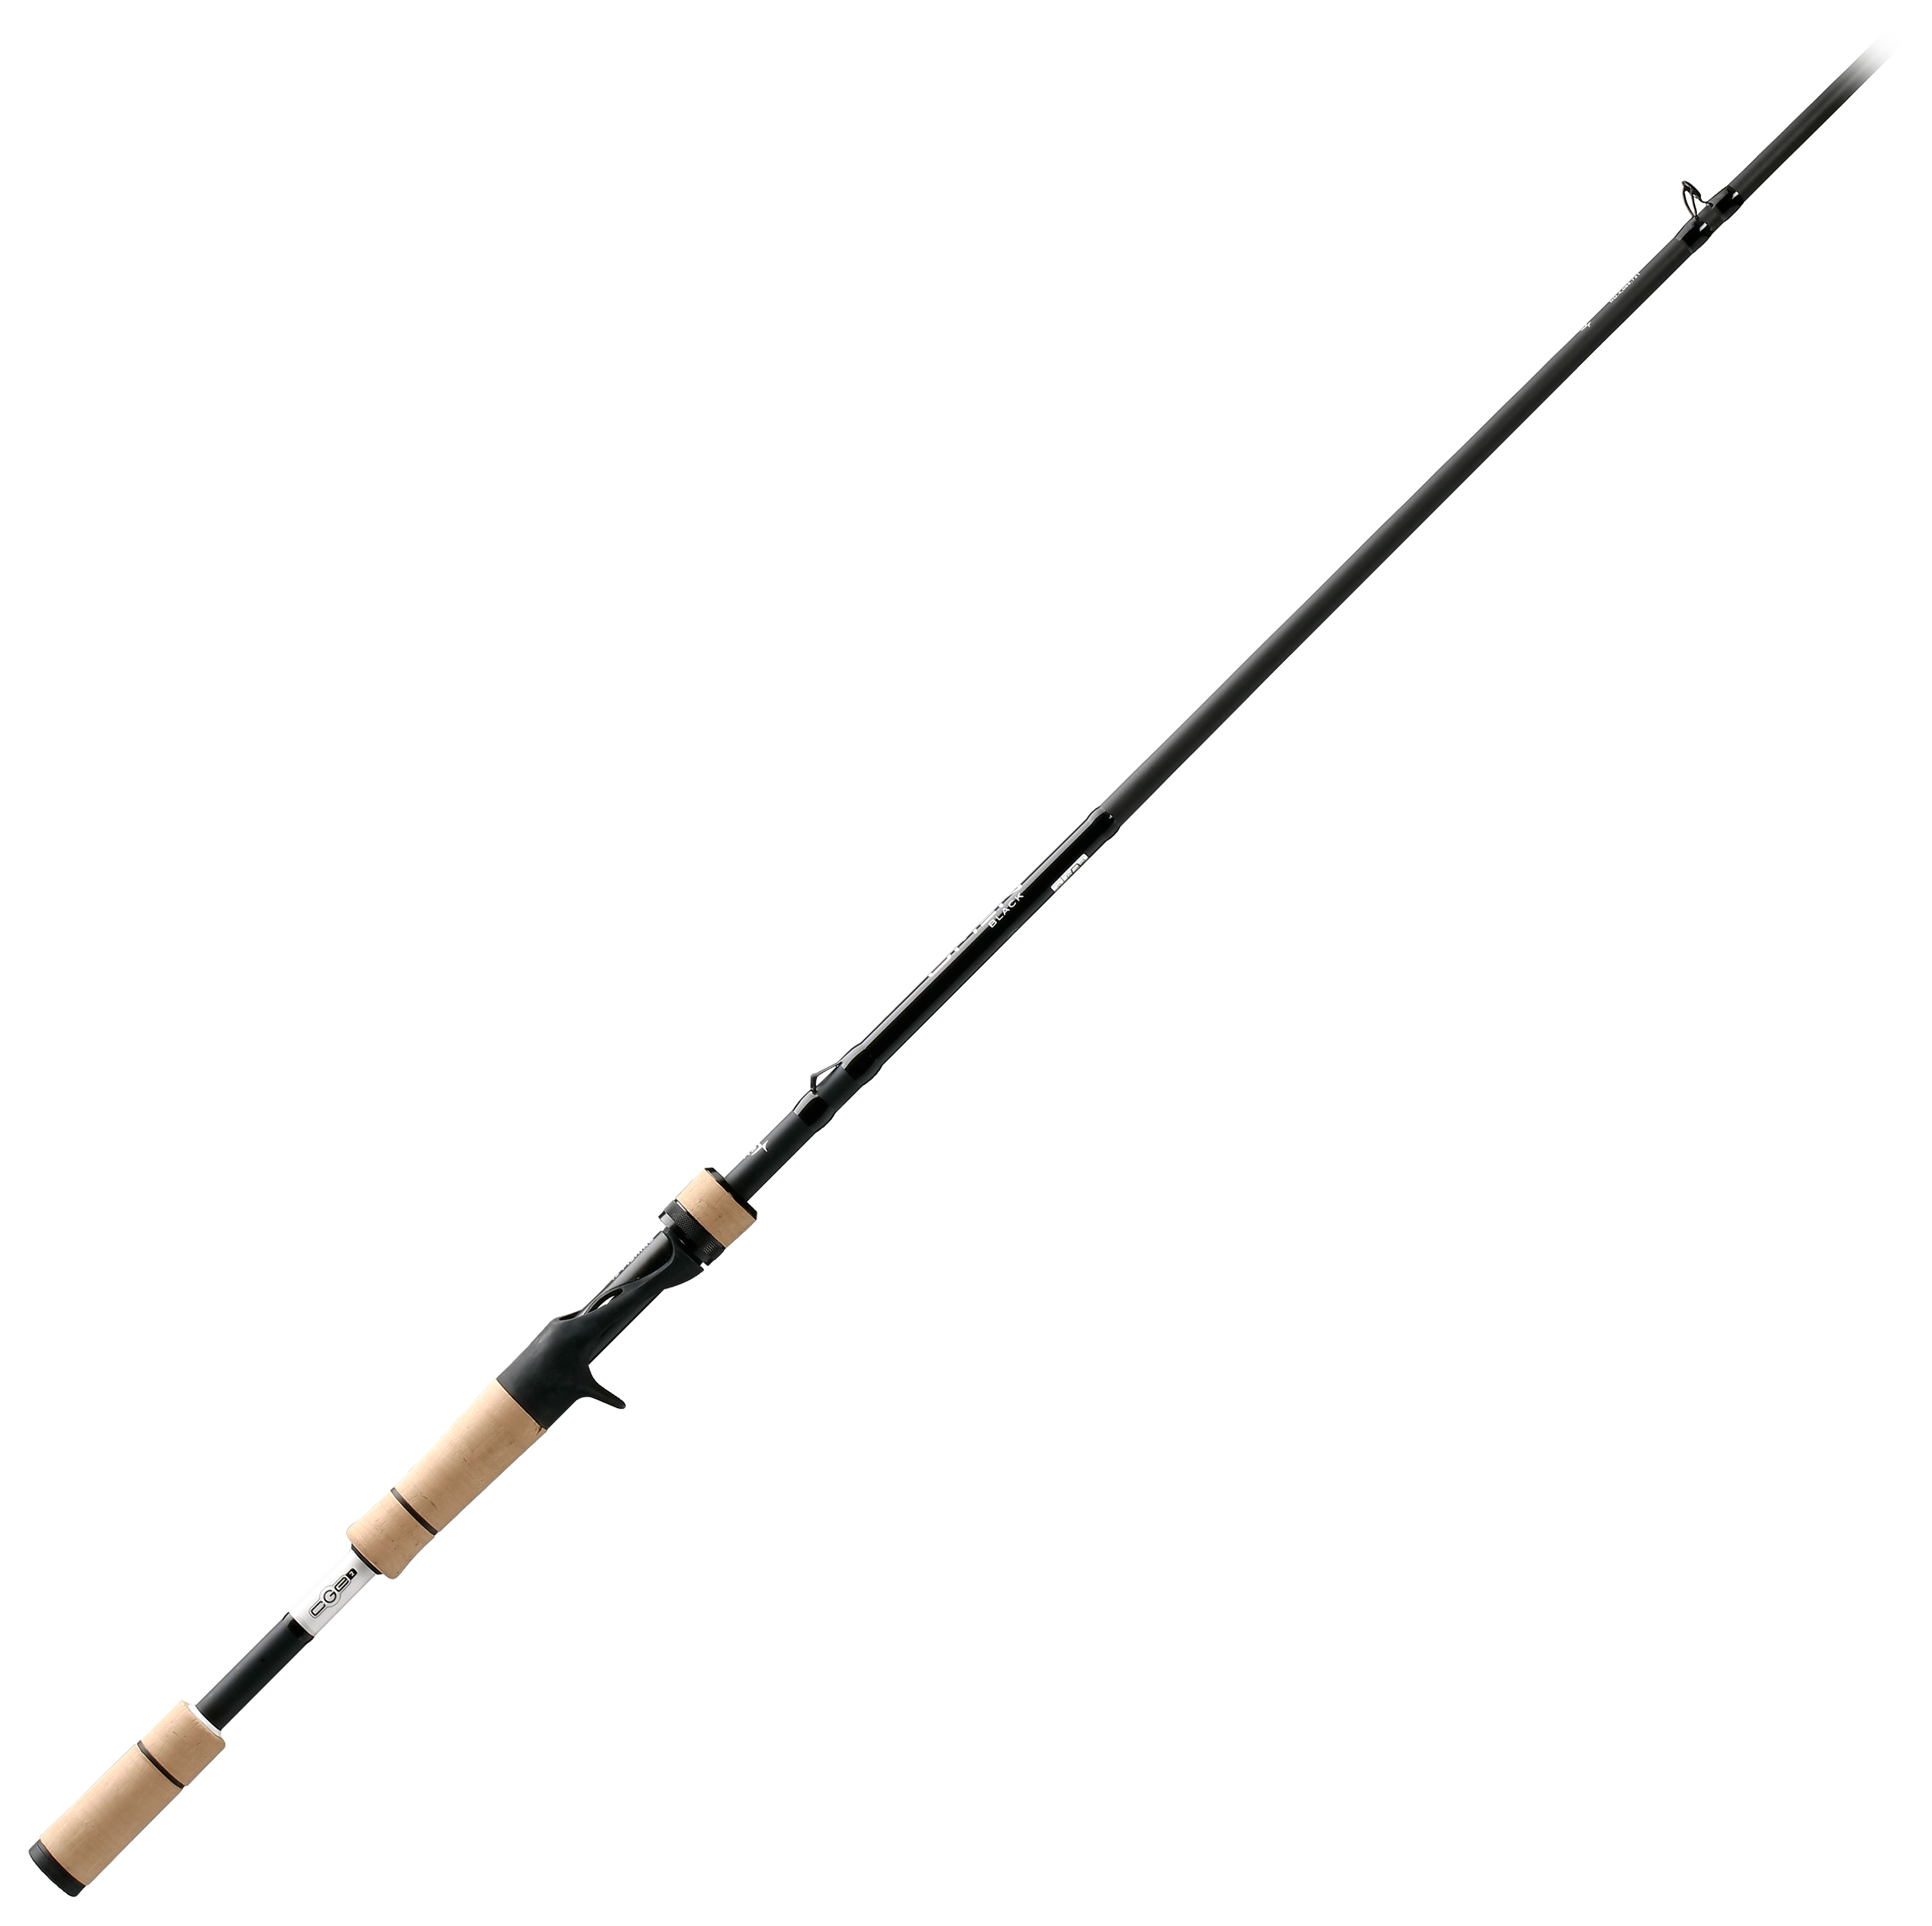 13 Fishing Omen Black Crankbait Casting Rod